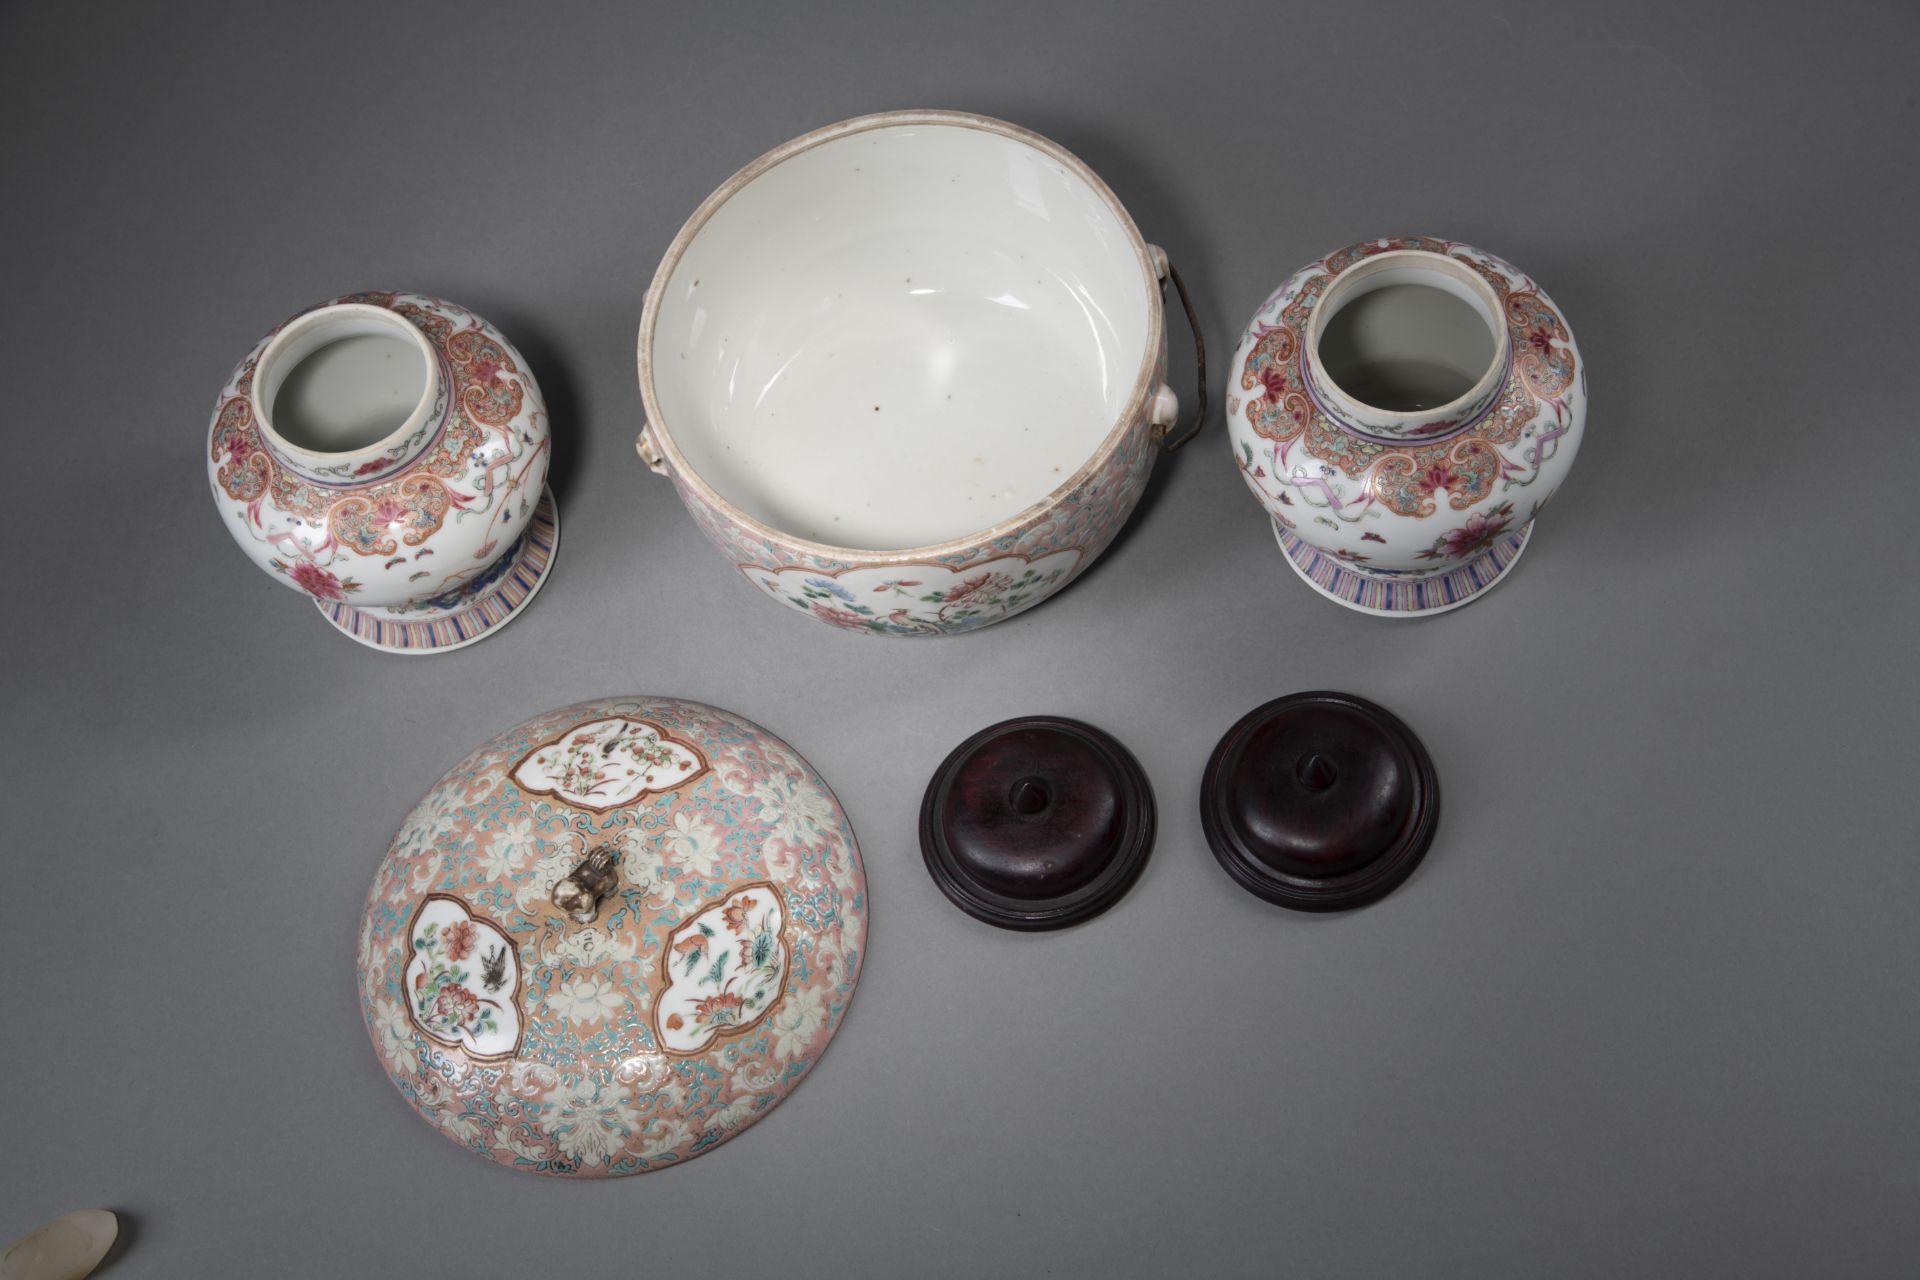 Eine Deckeldose und zwei Deckelvasen aus Porzellan mit floralem 'Famille rose'-Dekor - Bild 4 aus 4